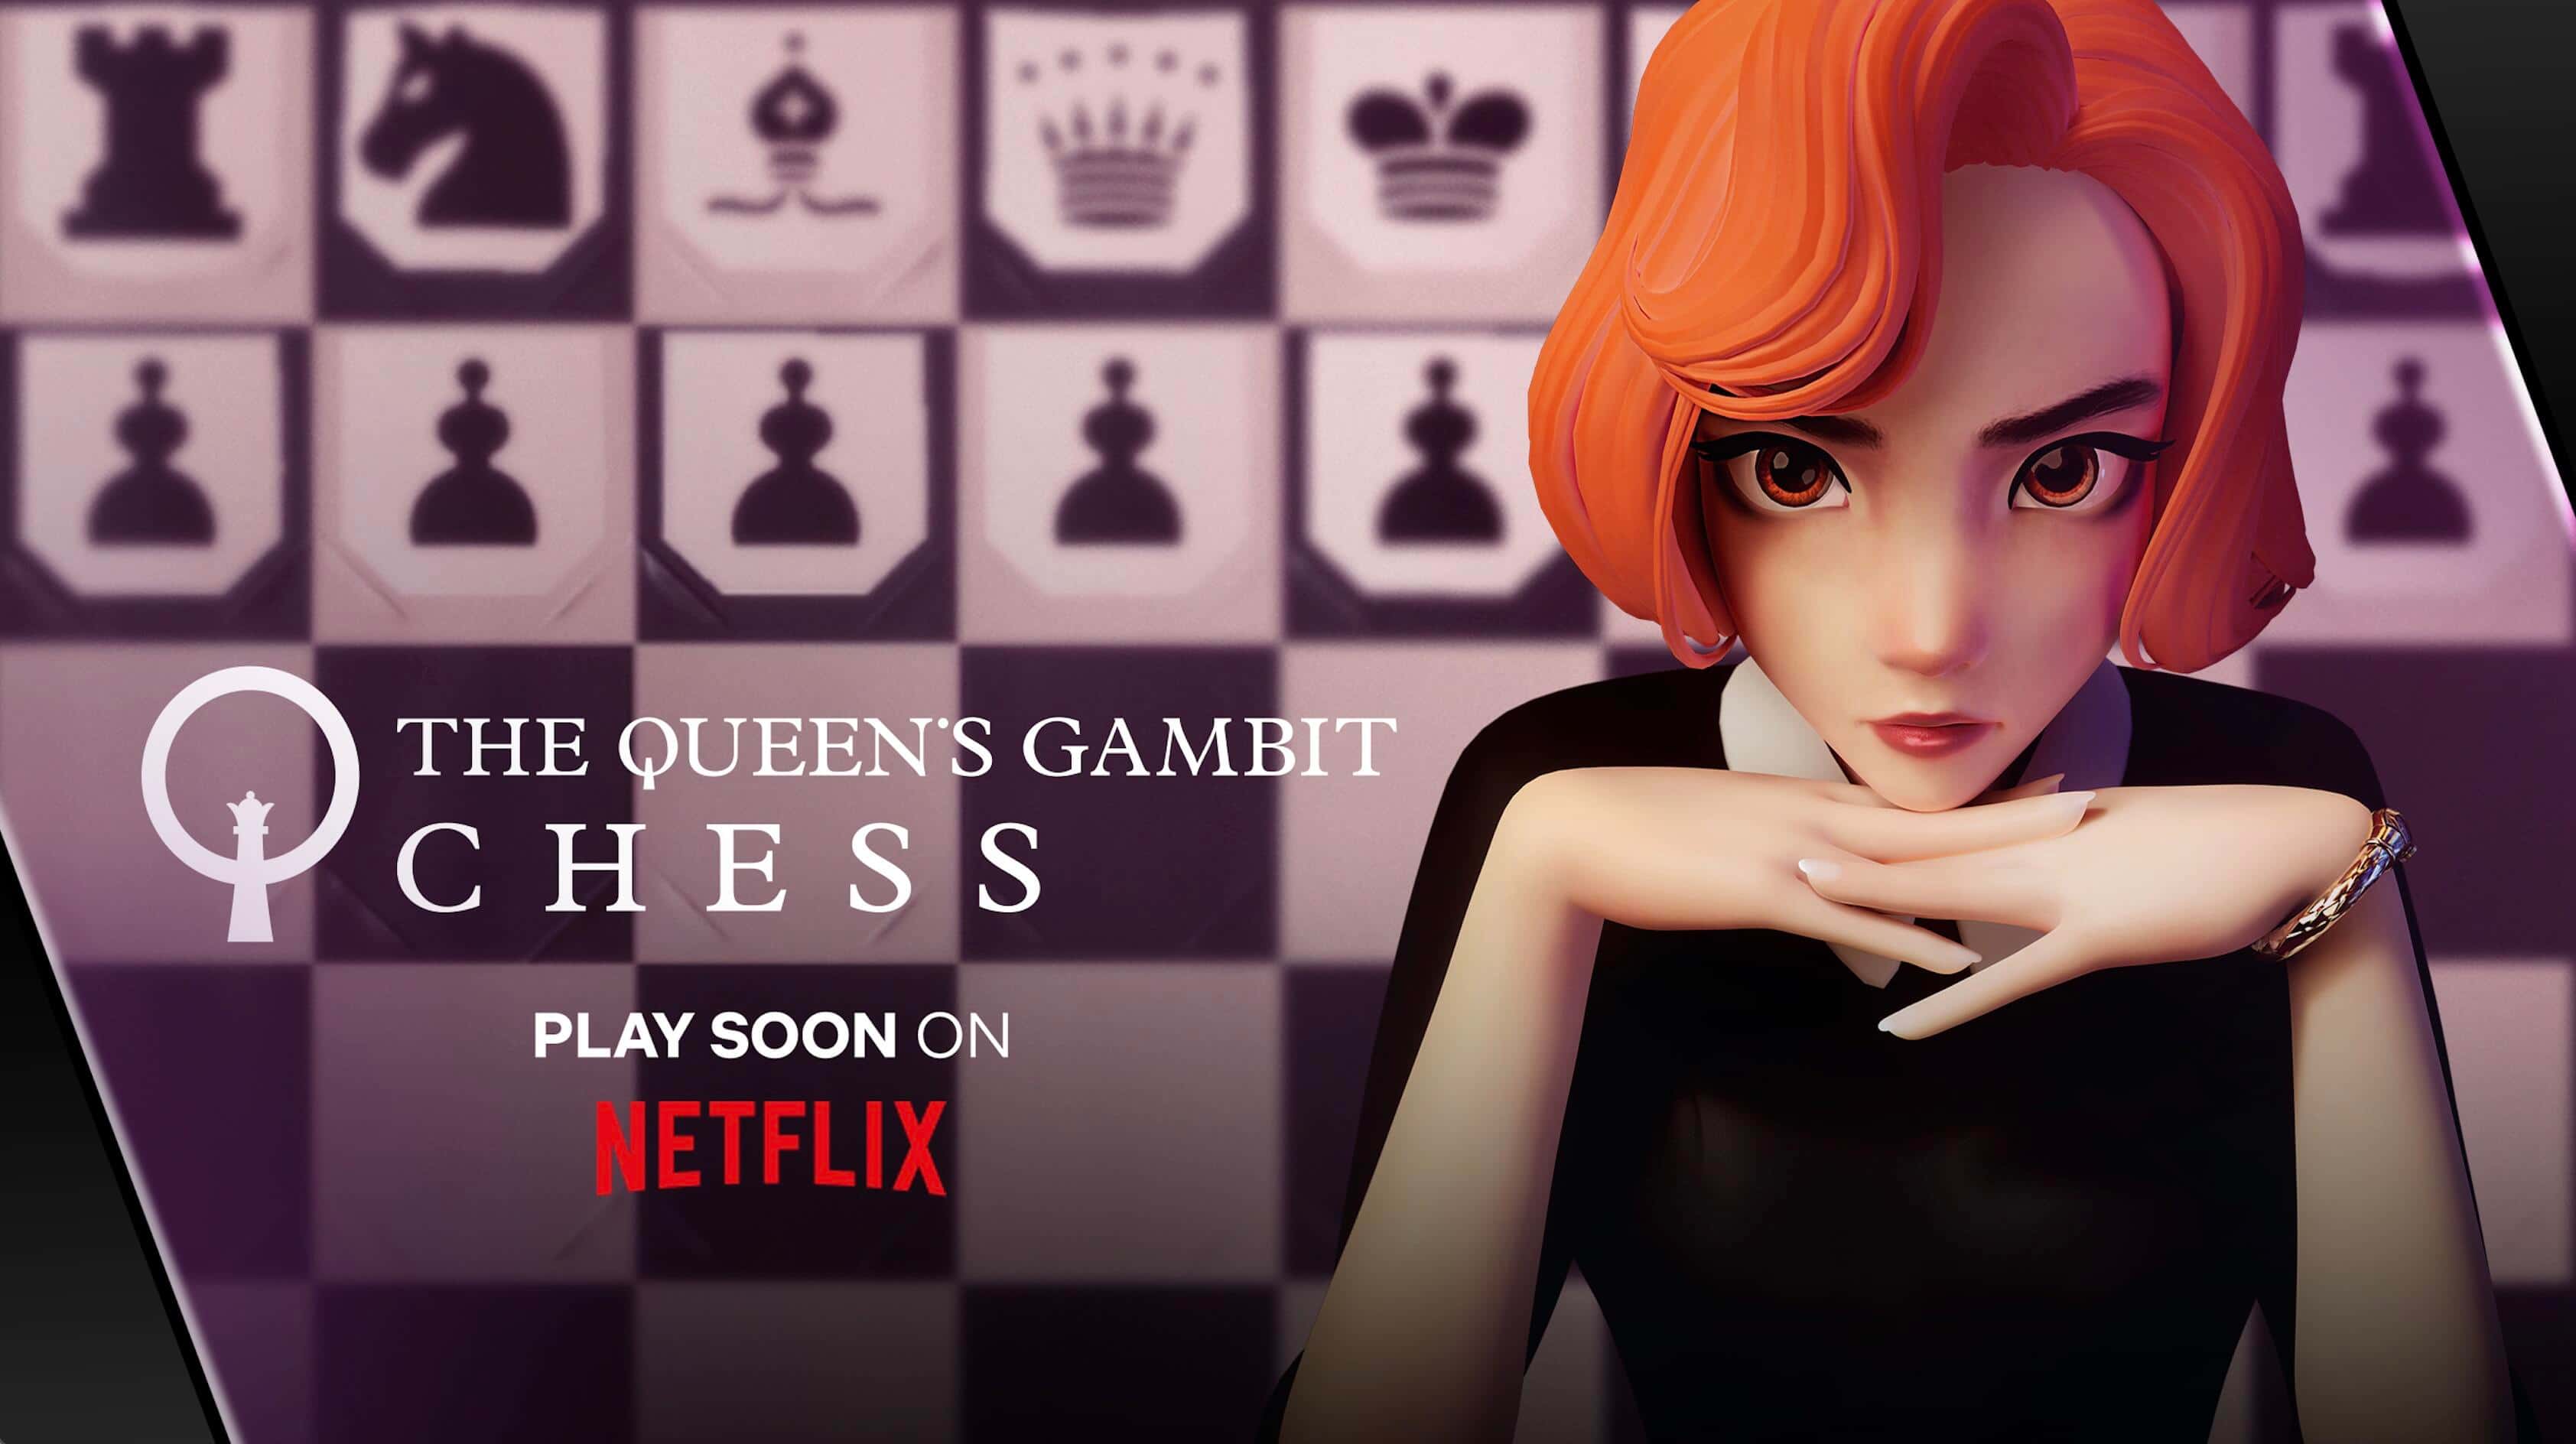 Netflix lança jogo O Gambito da Rainha: Xadrez, inspirado na sua